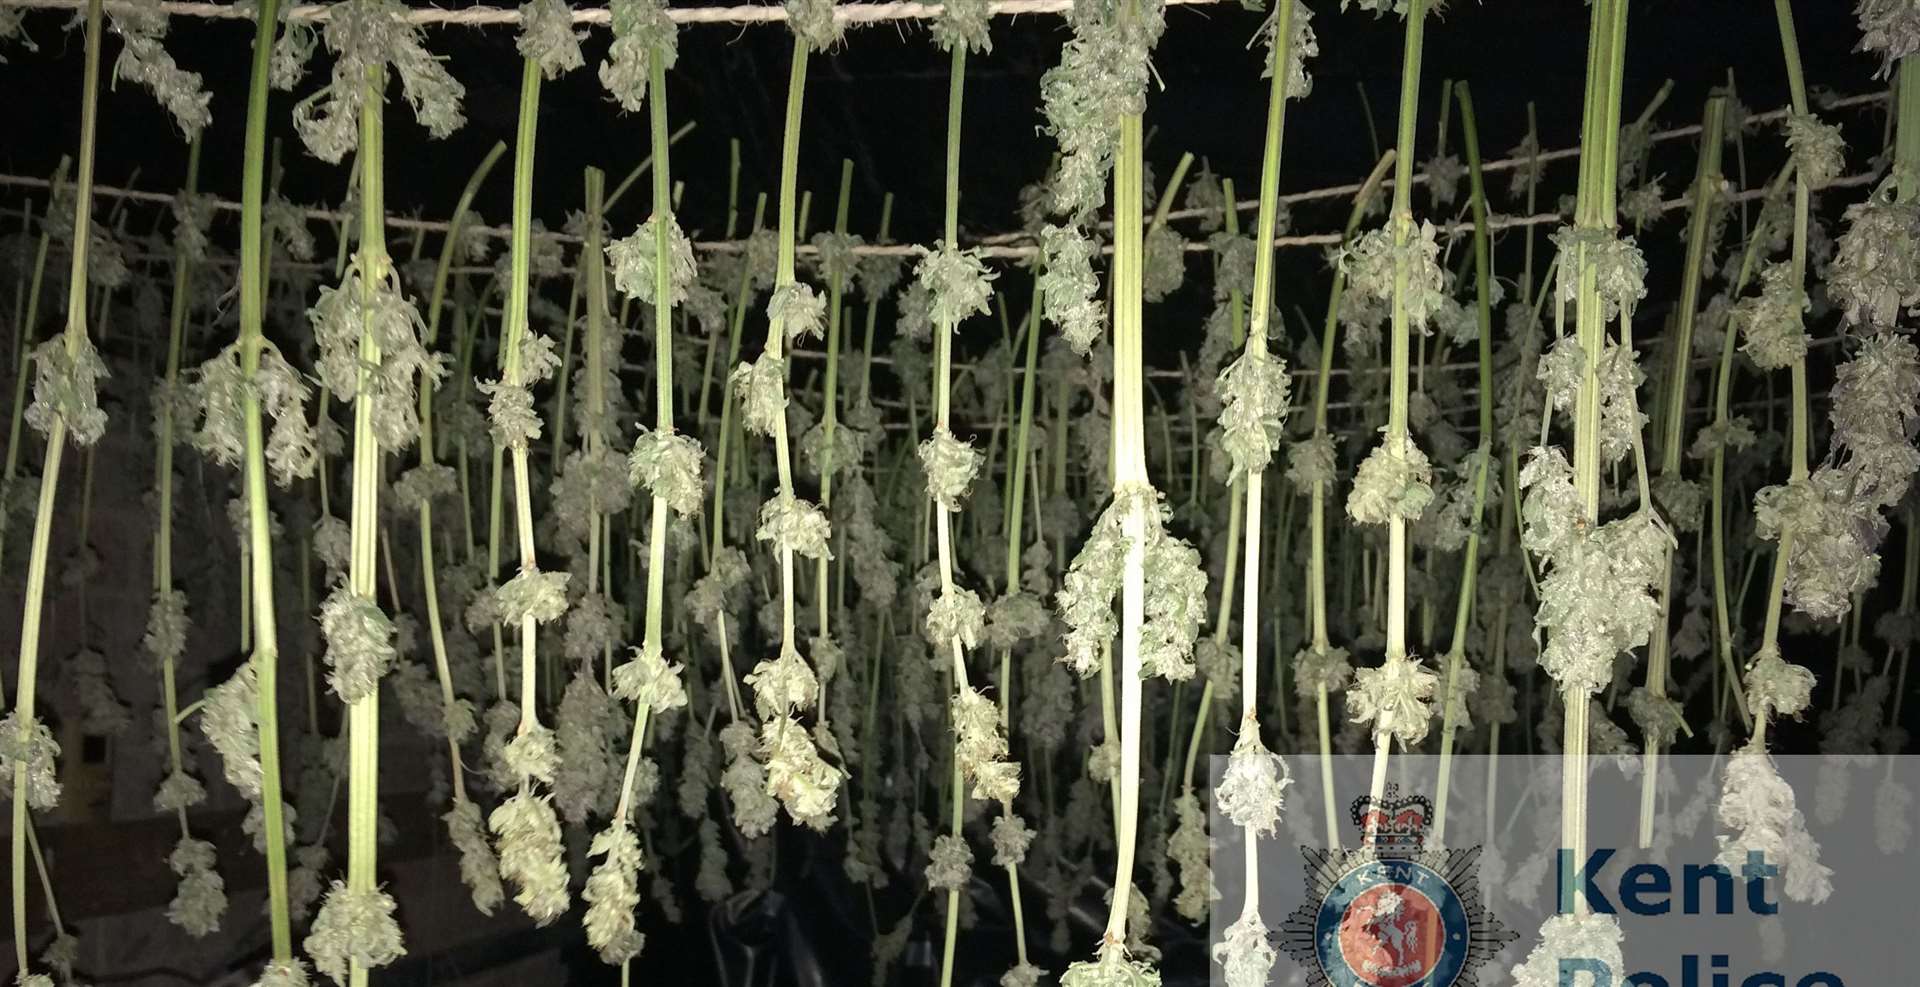 The cannabis farm found in Folkestone